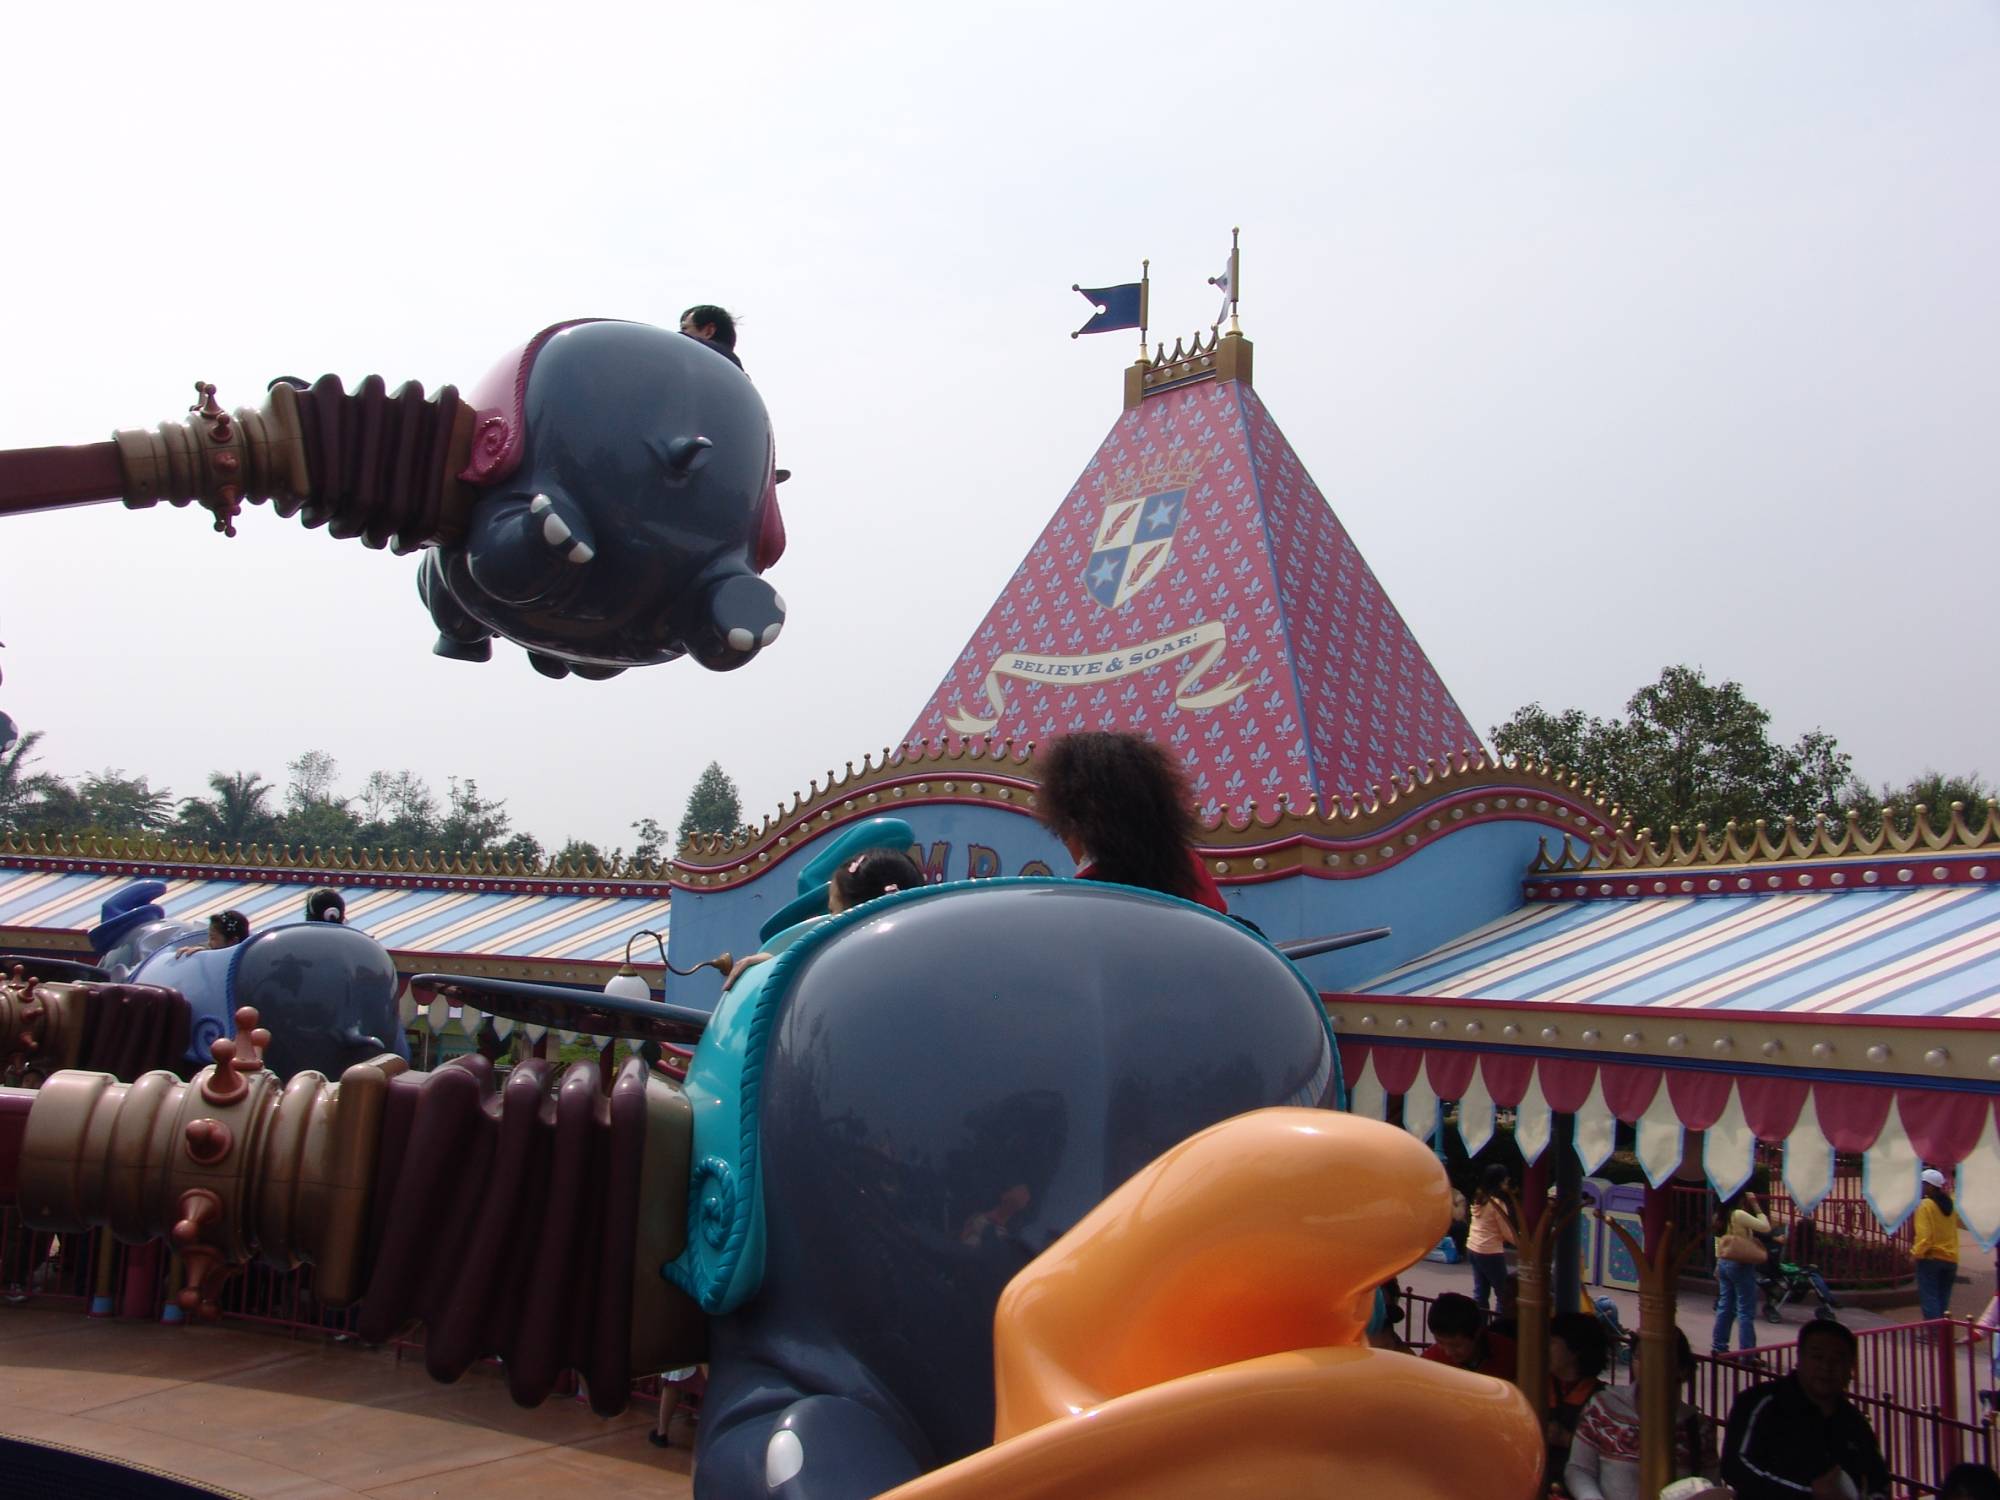 Hong Kong Disneyland - Dumbo the Flying Elephant